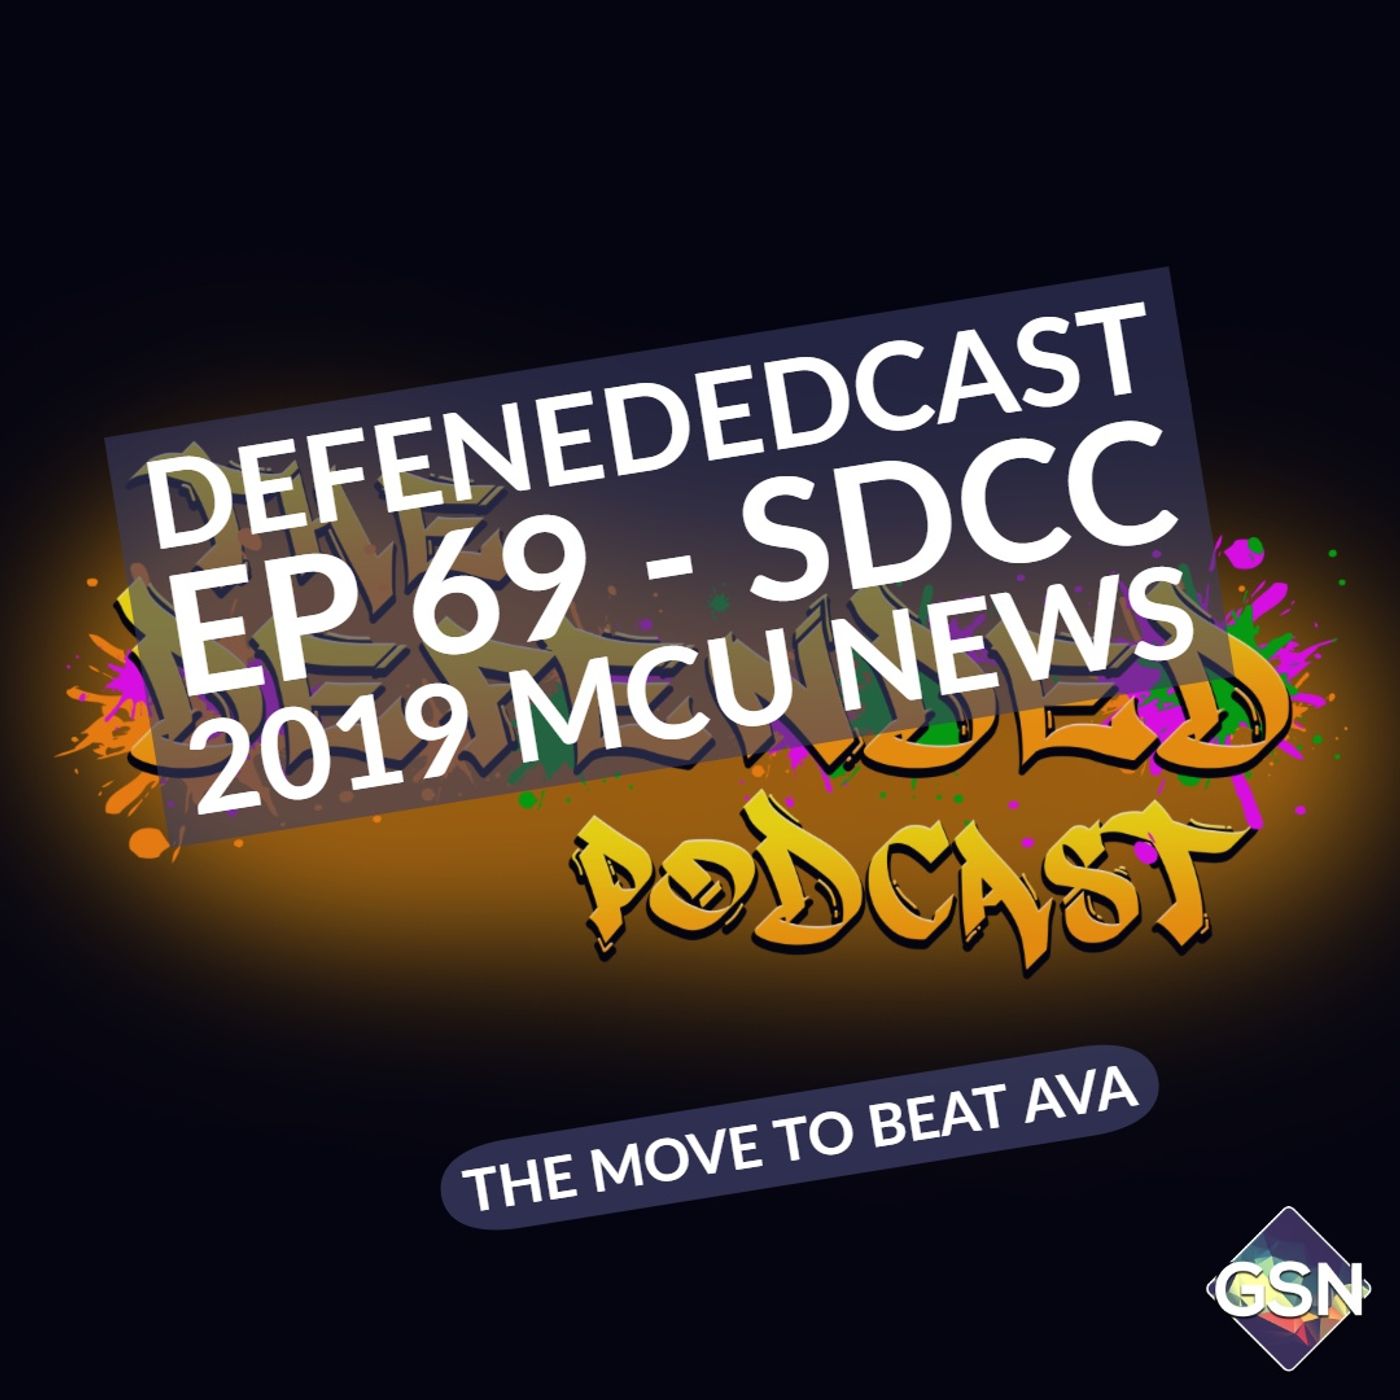 Defendedcast Ep 69 - SDCC 2019 MCU News